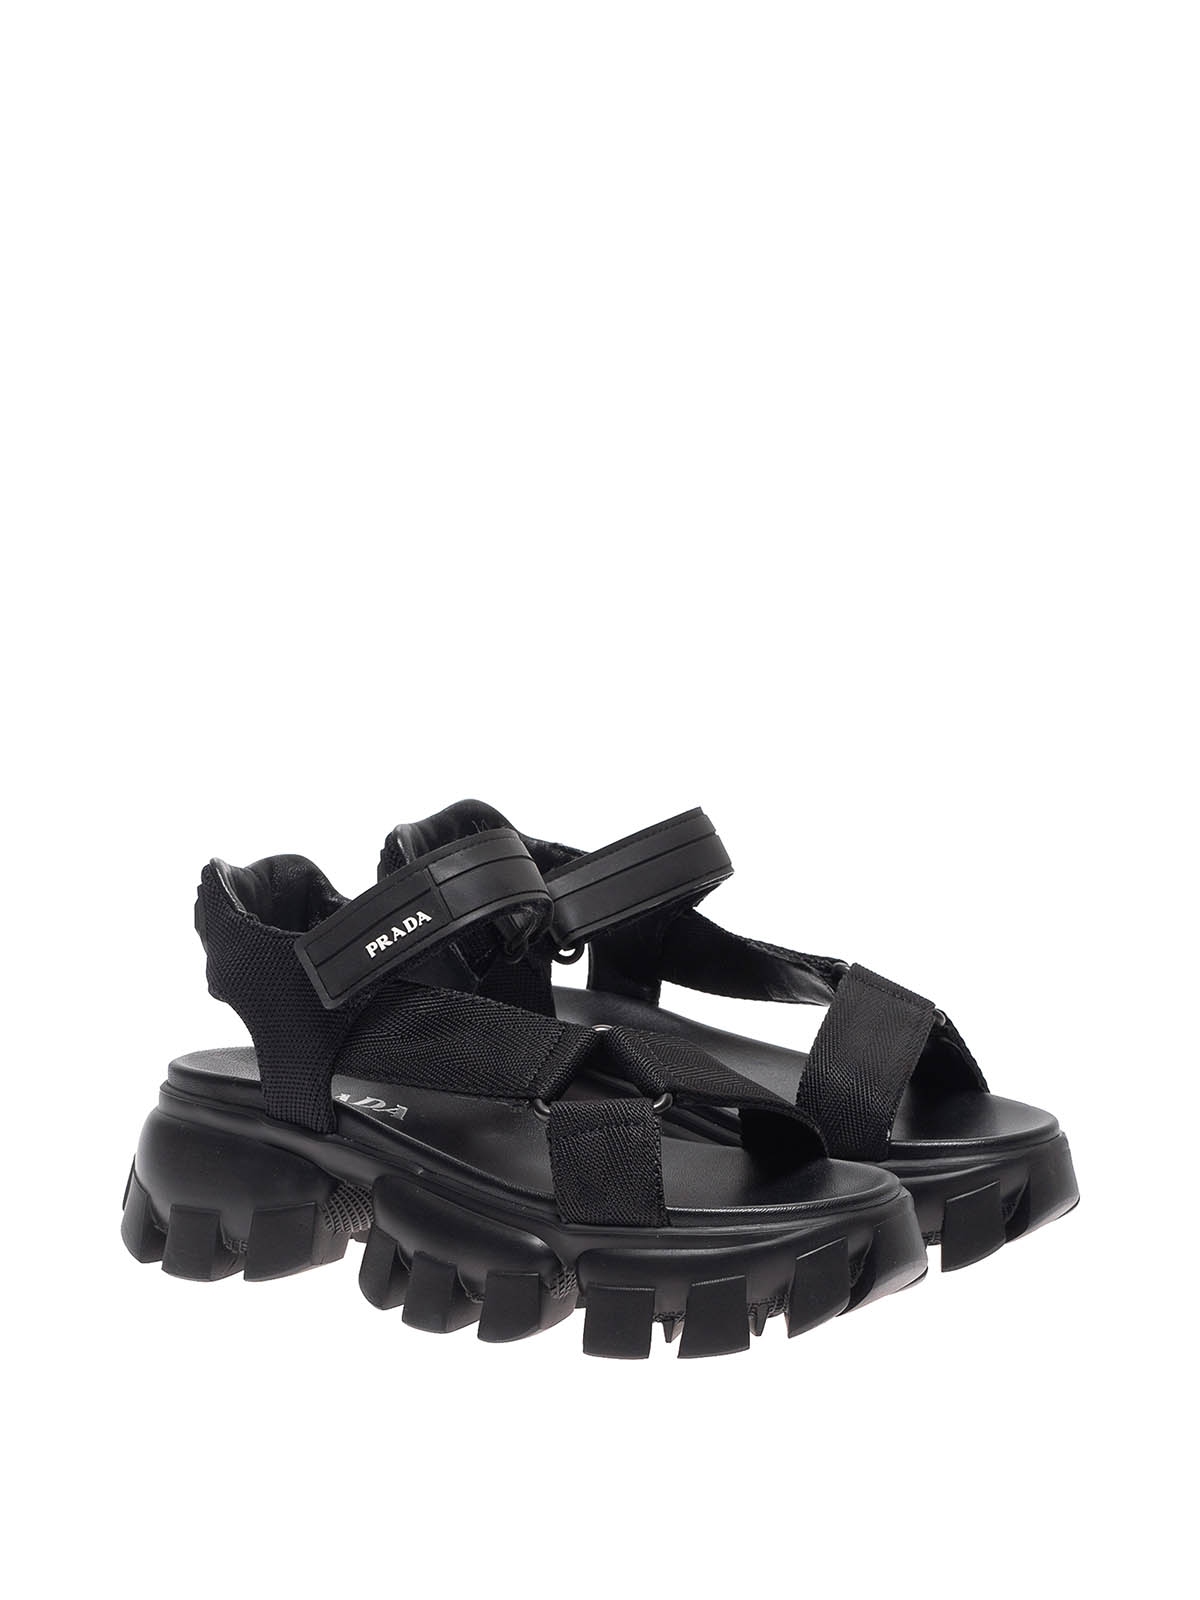 Sandals Prada - Cloudbust Thunder sandals - 1X037M3L6WF0002 | iKRIX.com